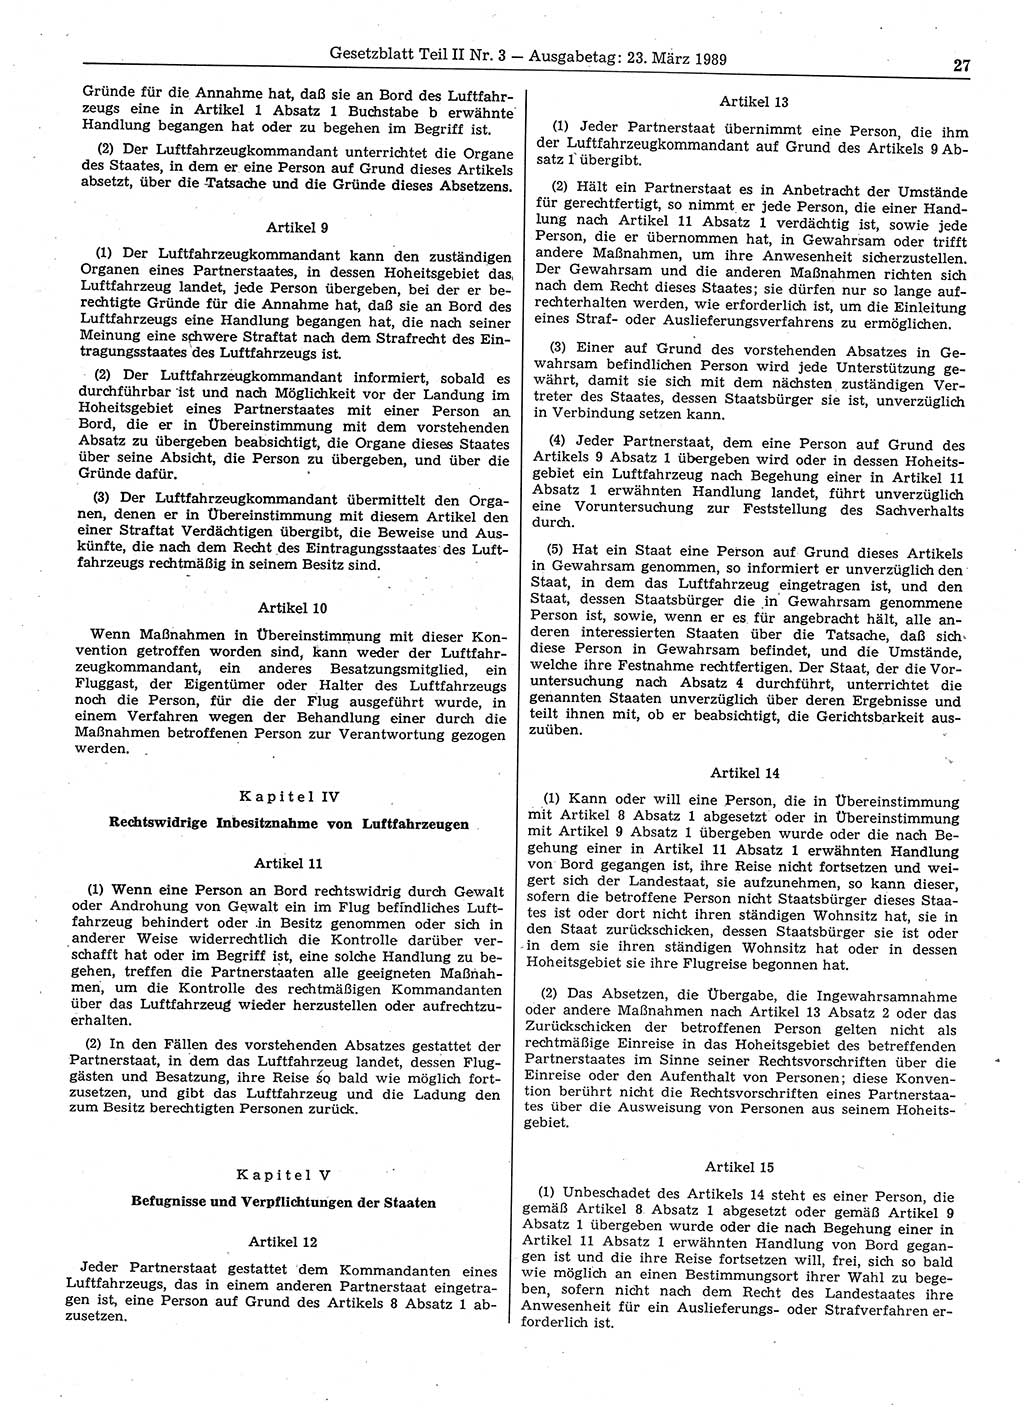 Gesetzblatt (GBl.) der Deutschen Demokratischen Republik (DDR) Teil ⅠⅠ 1989, Seite 27 (GBl. DDR ⅠⅠ 1989, S. 27)